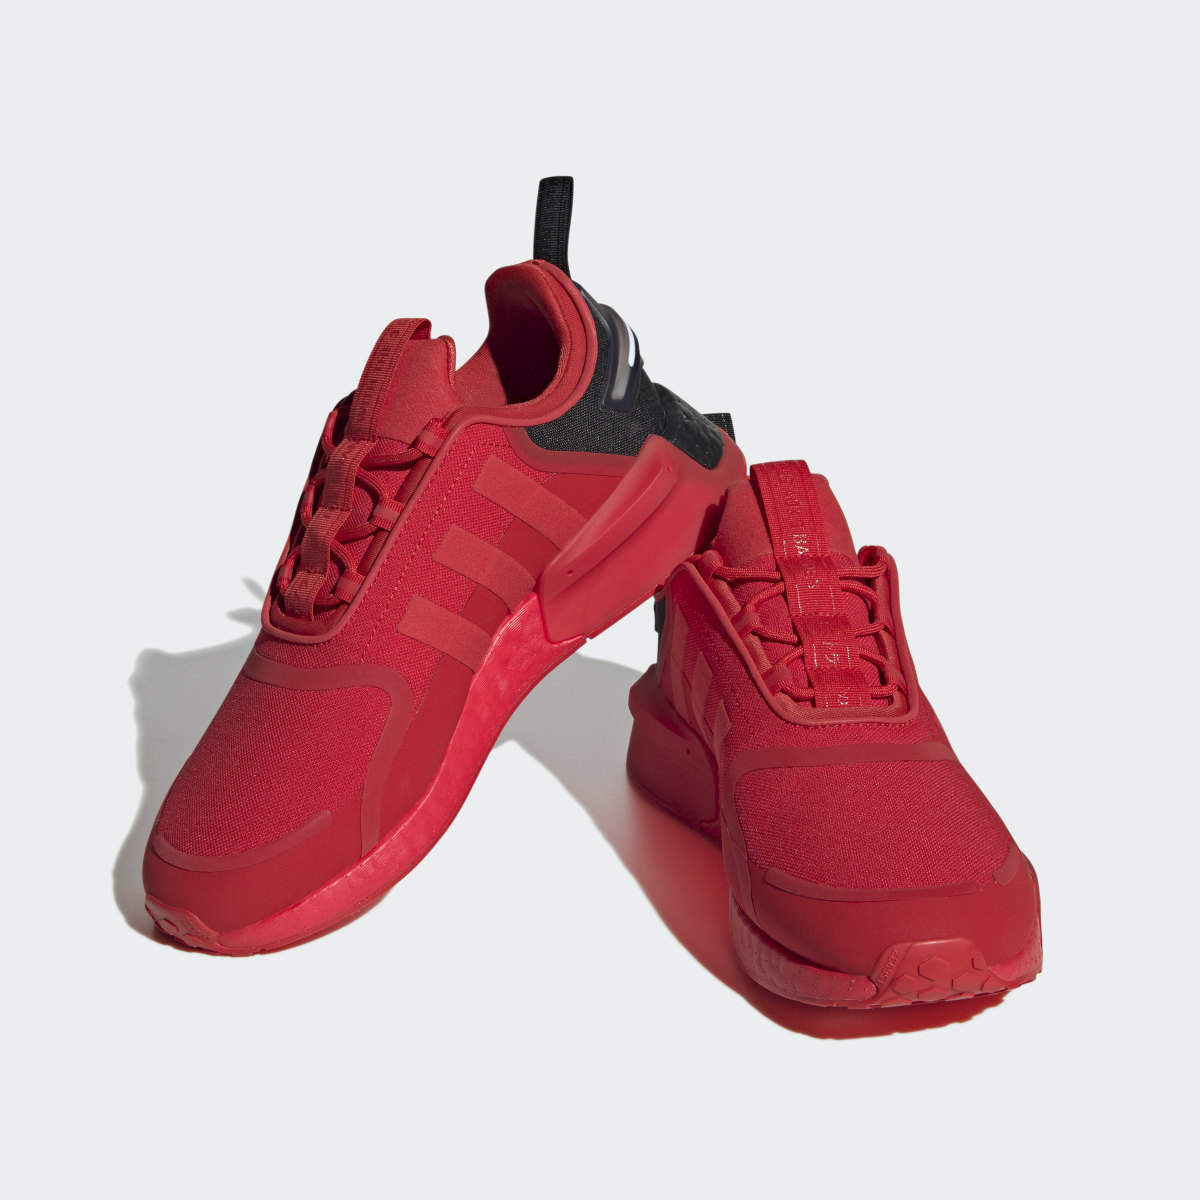 Adidas NMD_R1 V3 Shoes. 5